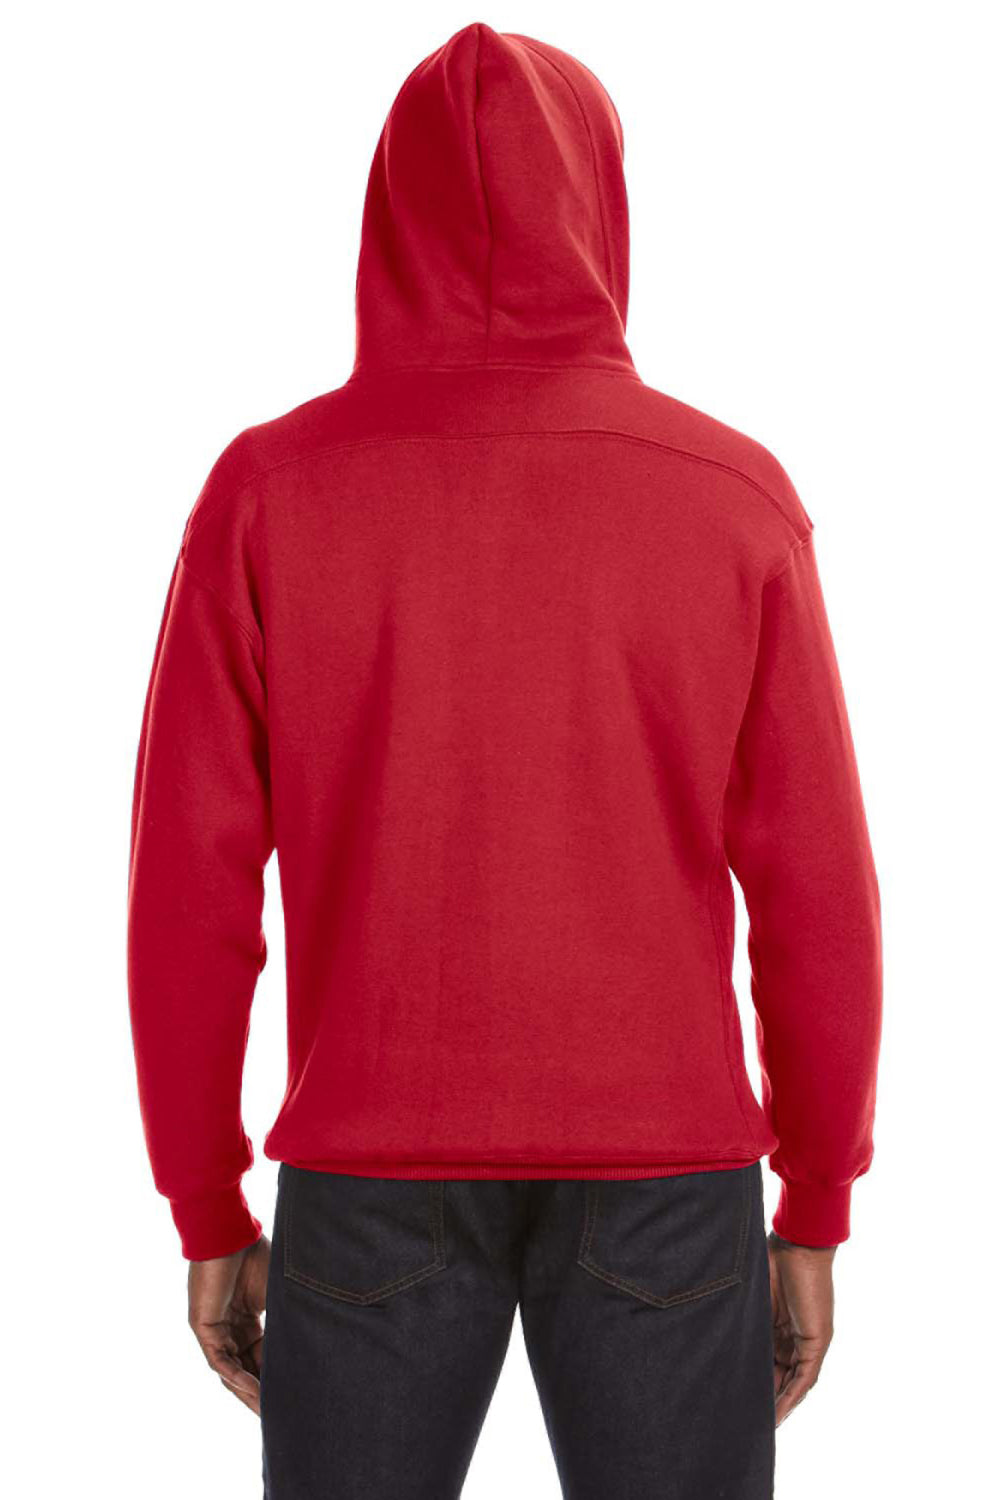 J America JA8830 Mens Sport Lace Hooded Sweatshirt Hoodie Red Back